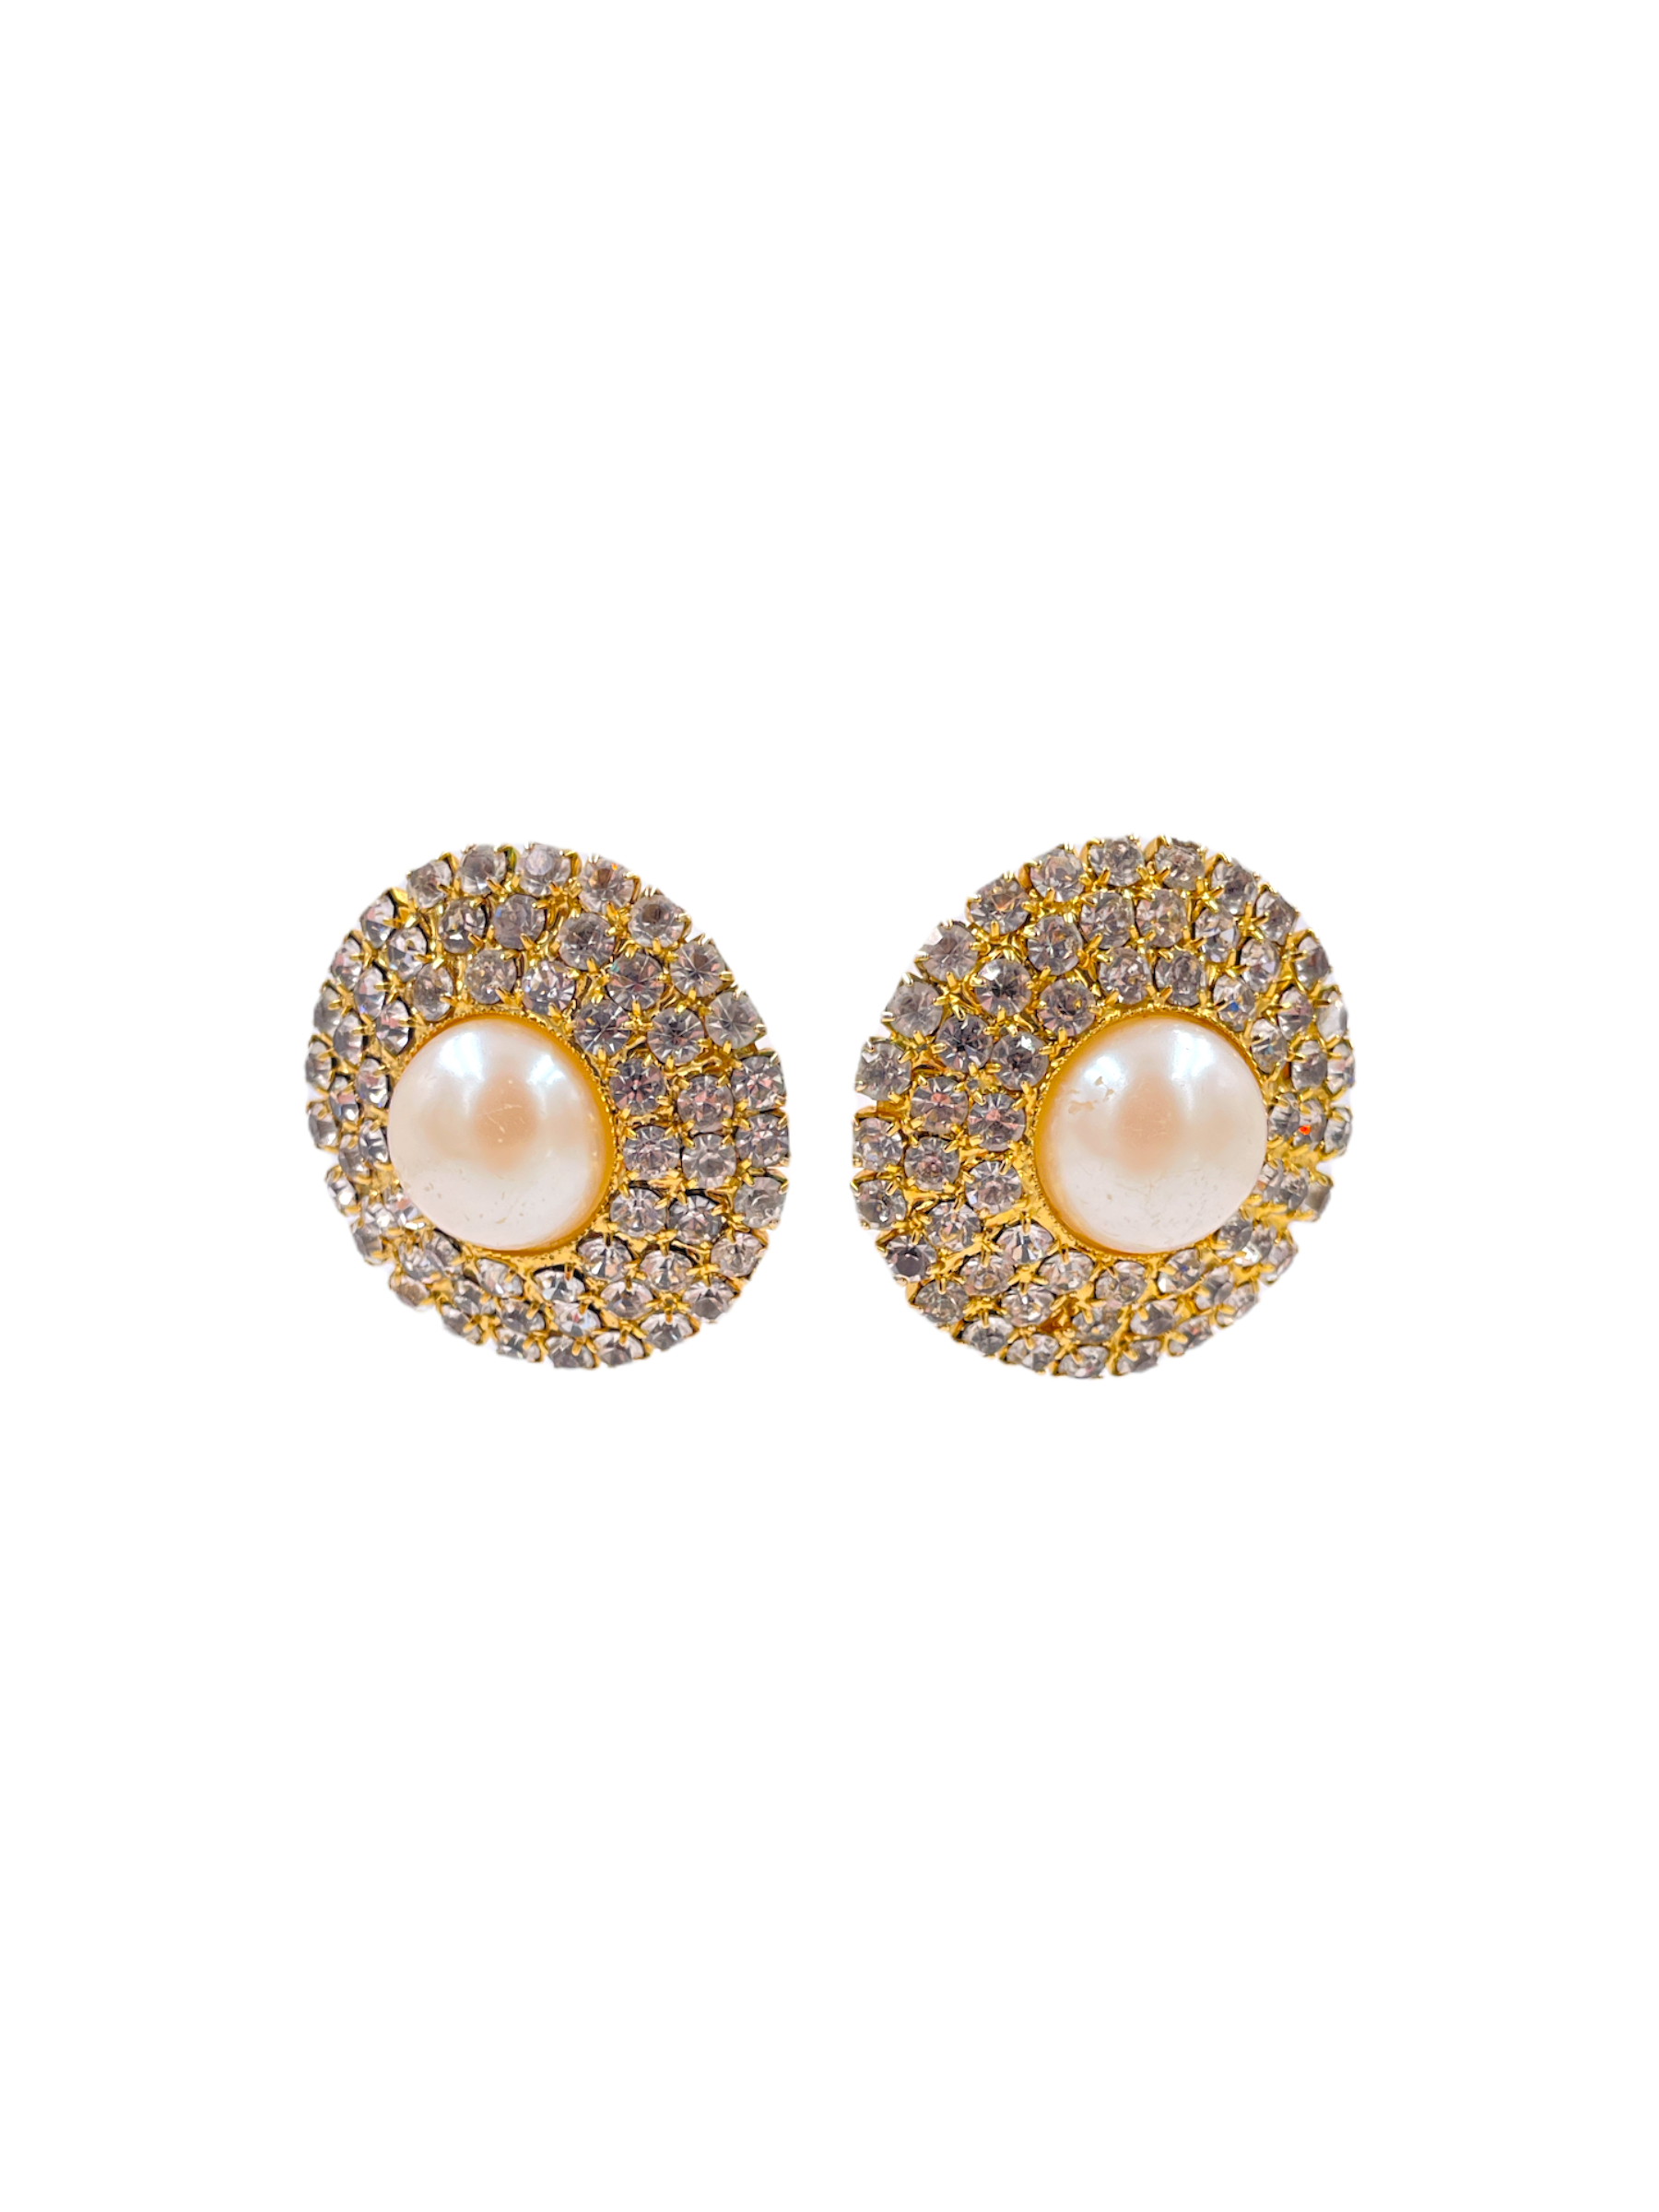 Crystal and Pearl Pinwheel Earrings